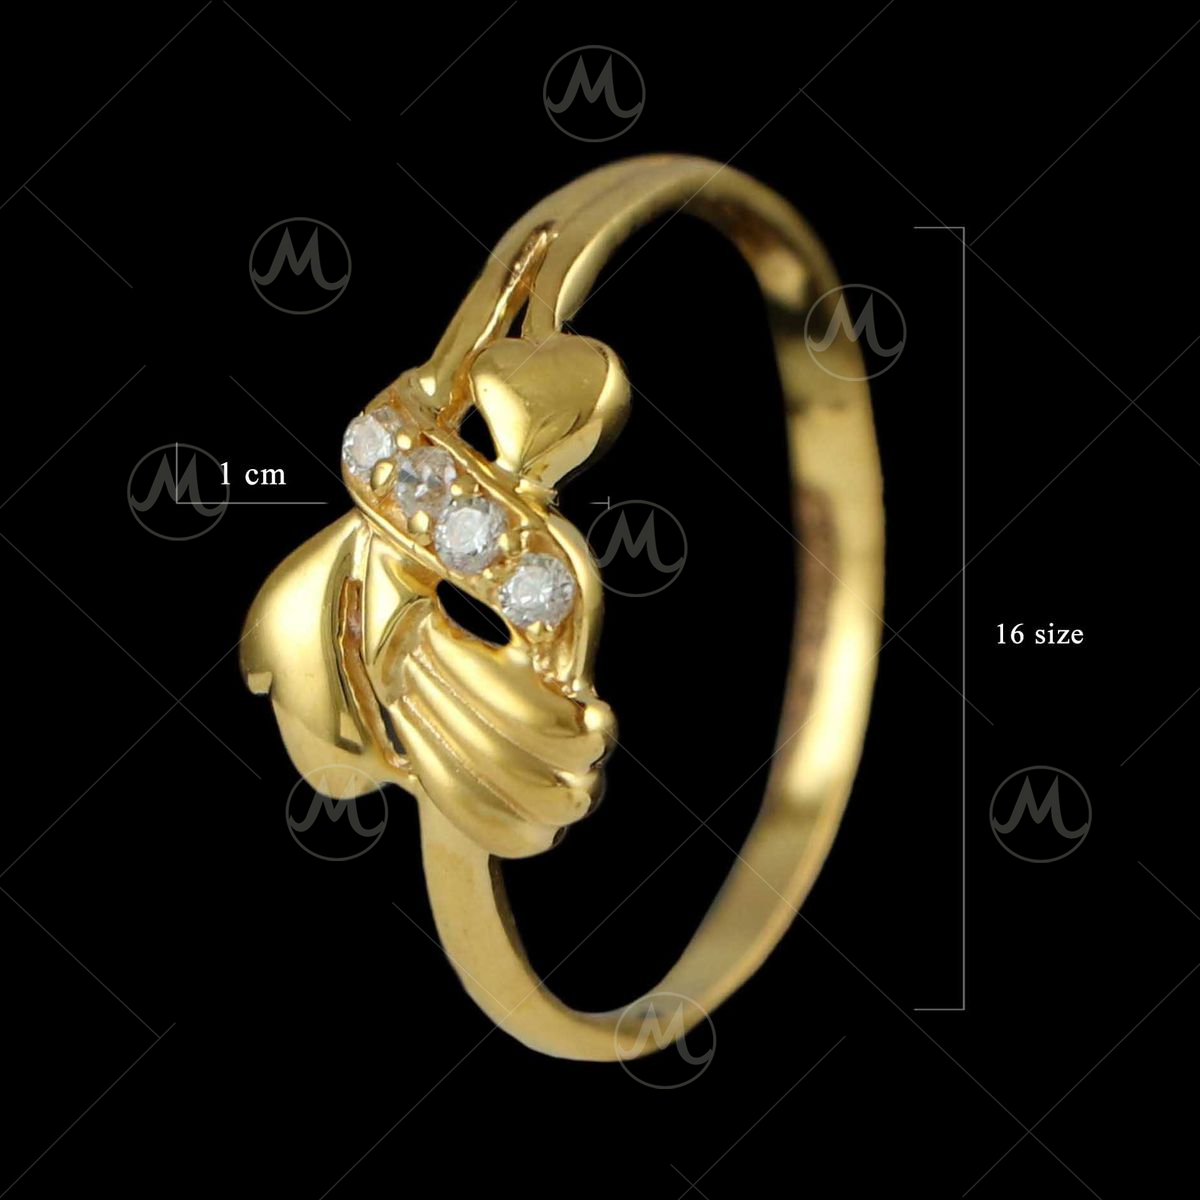 22K Gold Wedding Band Ring For Women - 235-GR6918 in 5.350 Grams